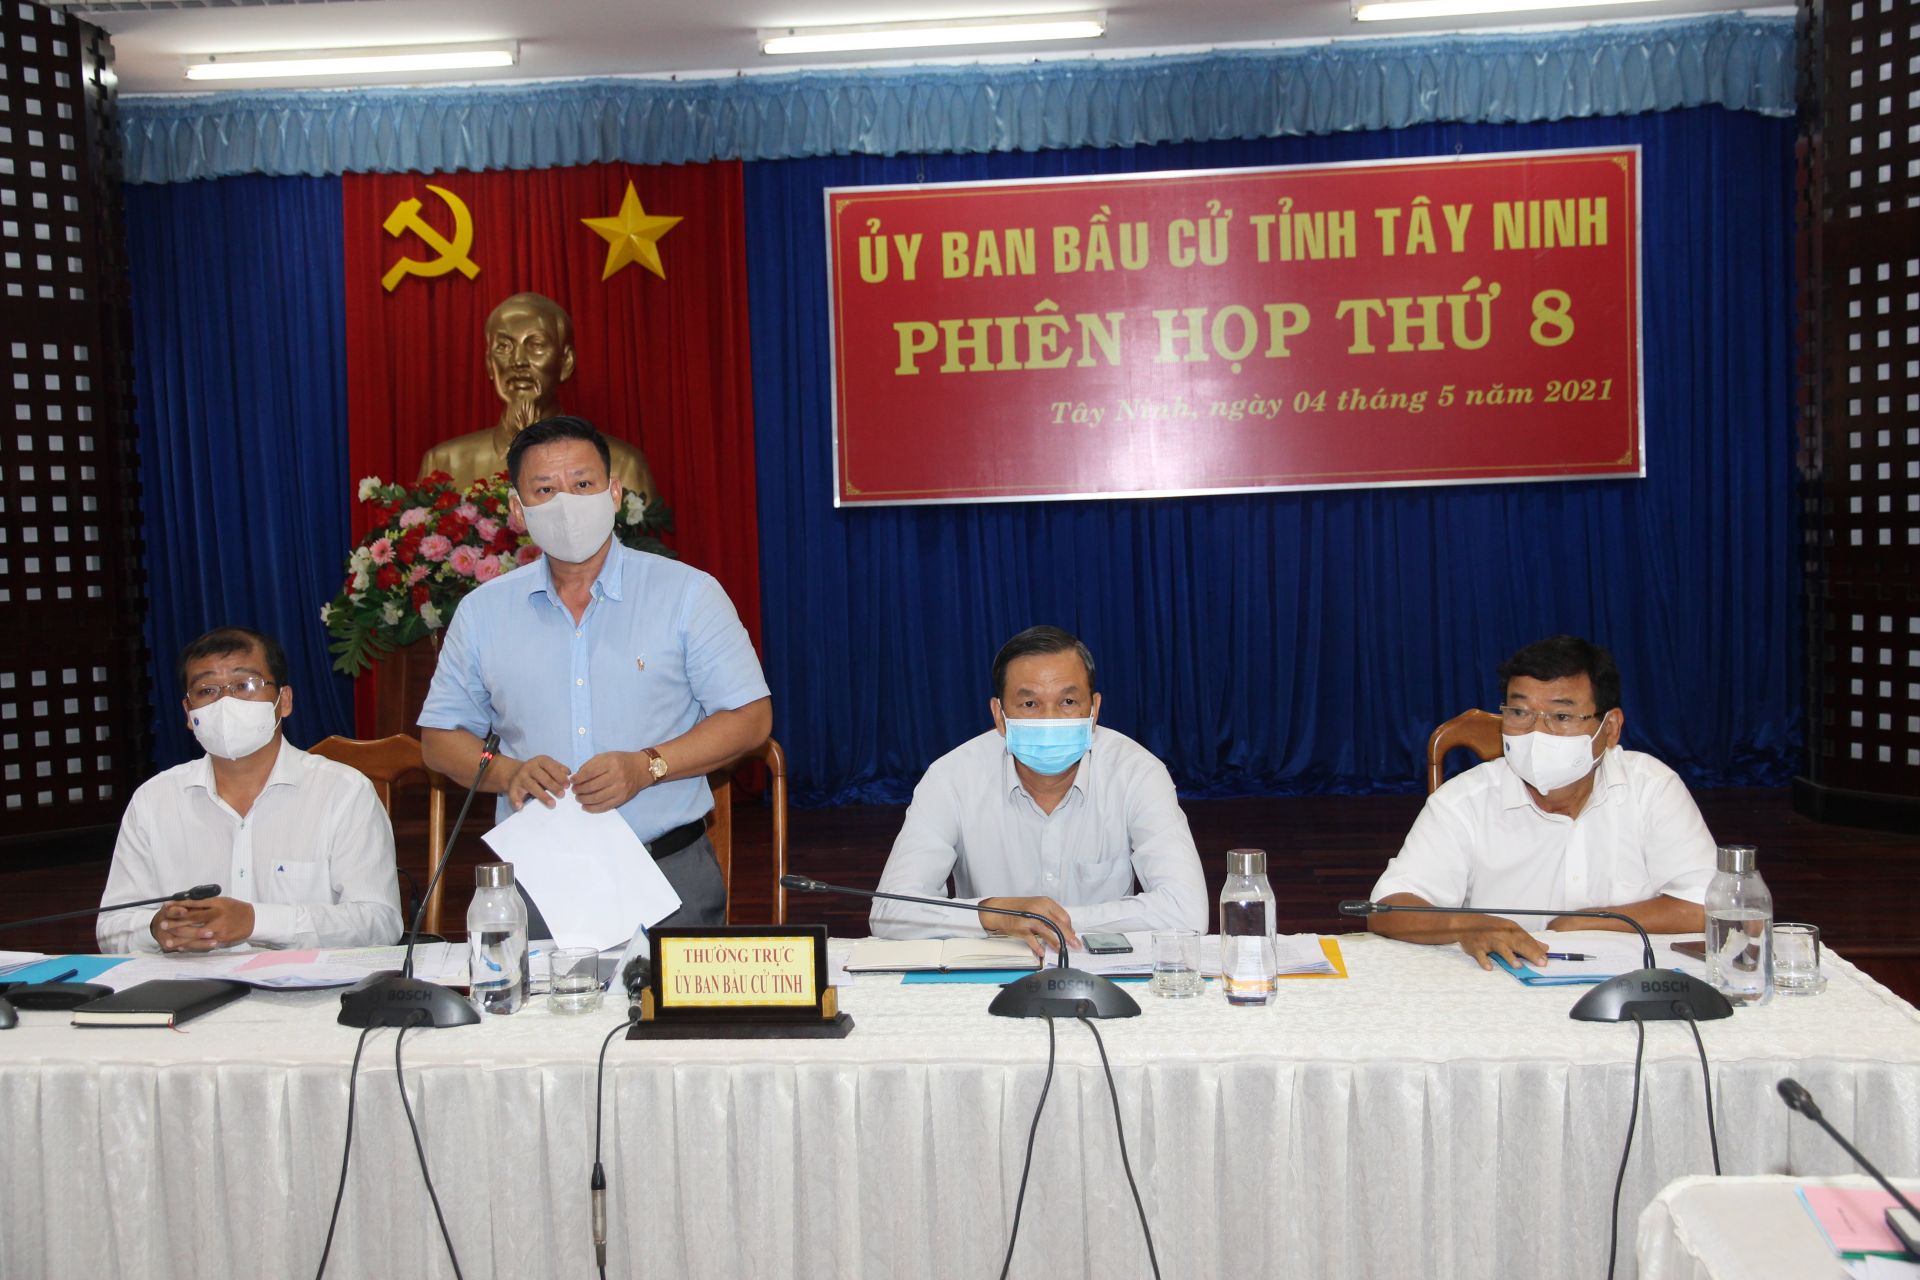 Đồng chí Nguyễn Thanh Ngọc, Chủ tịch UBND tỉnh, Chủ tịch Ủy ban Bầu cử tỉnh Tây Ninh phát biểu tại phiên họp. (Ảnh: N.D)